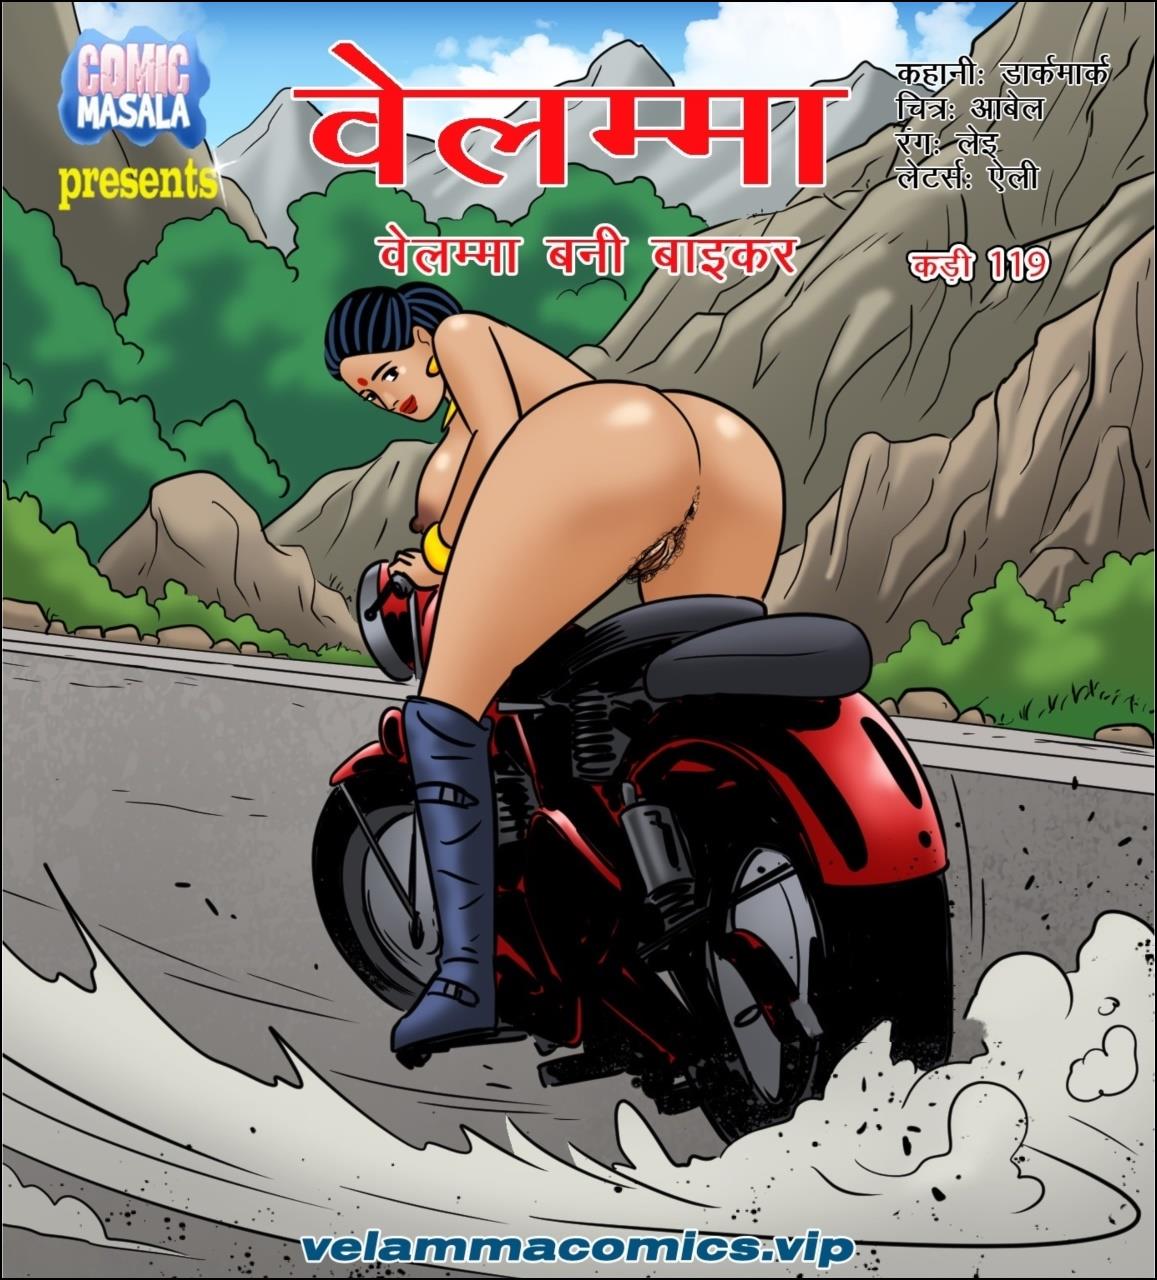 Free porn comics in hindi